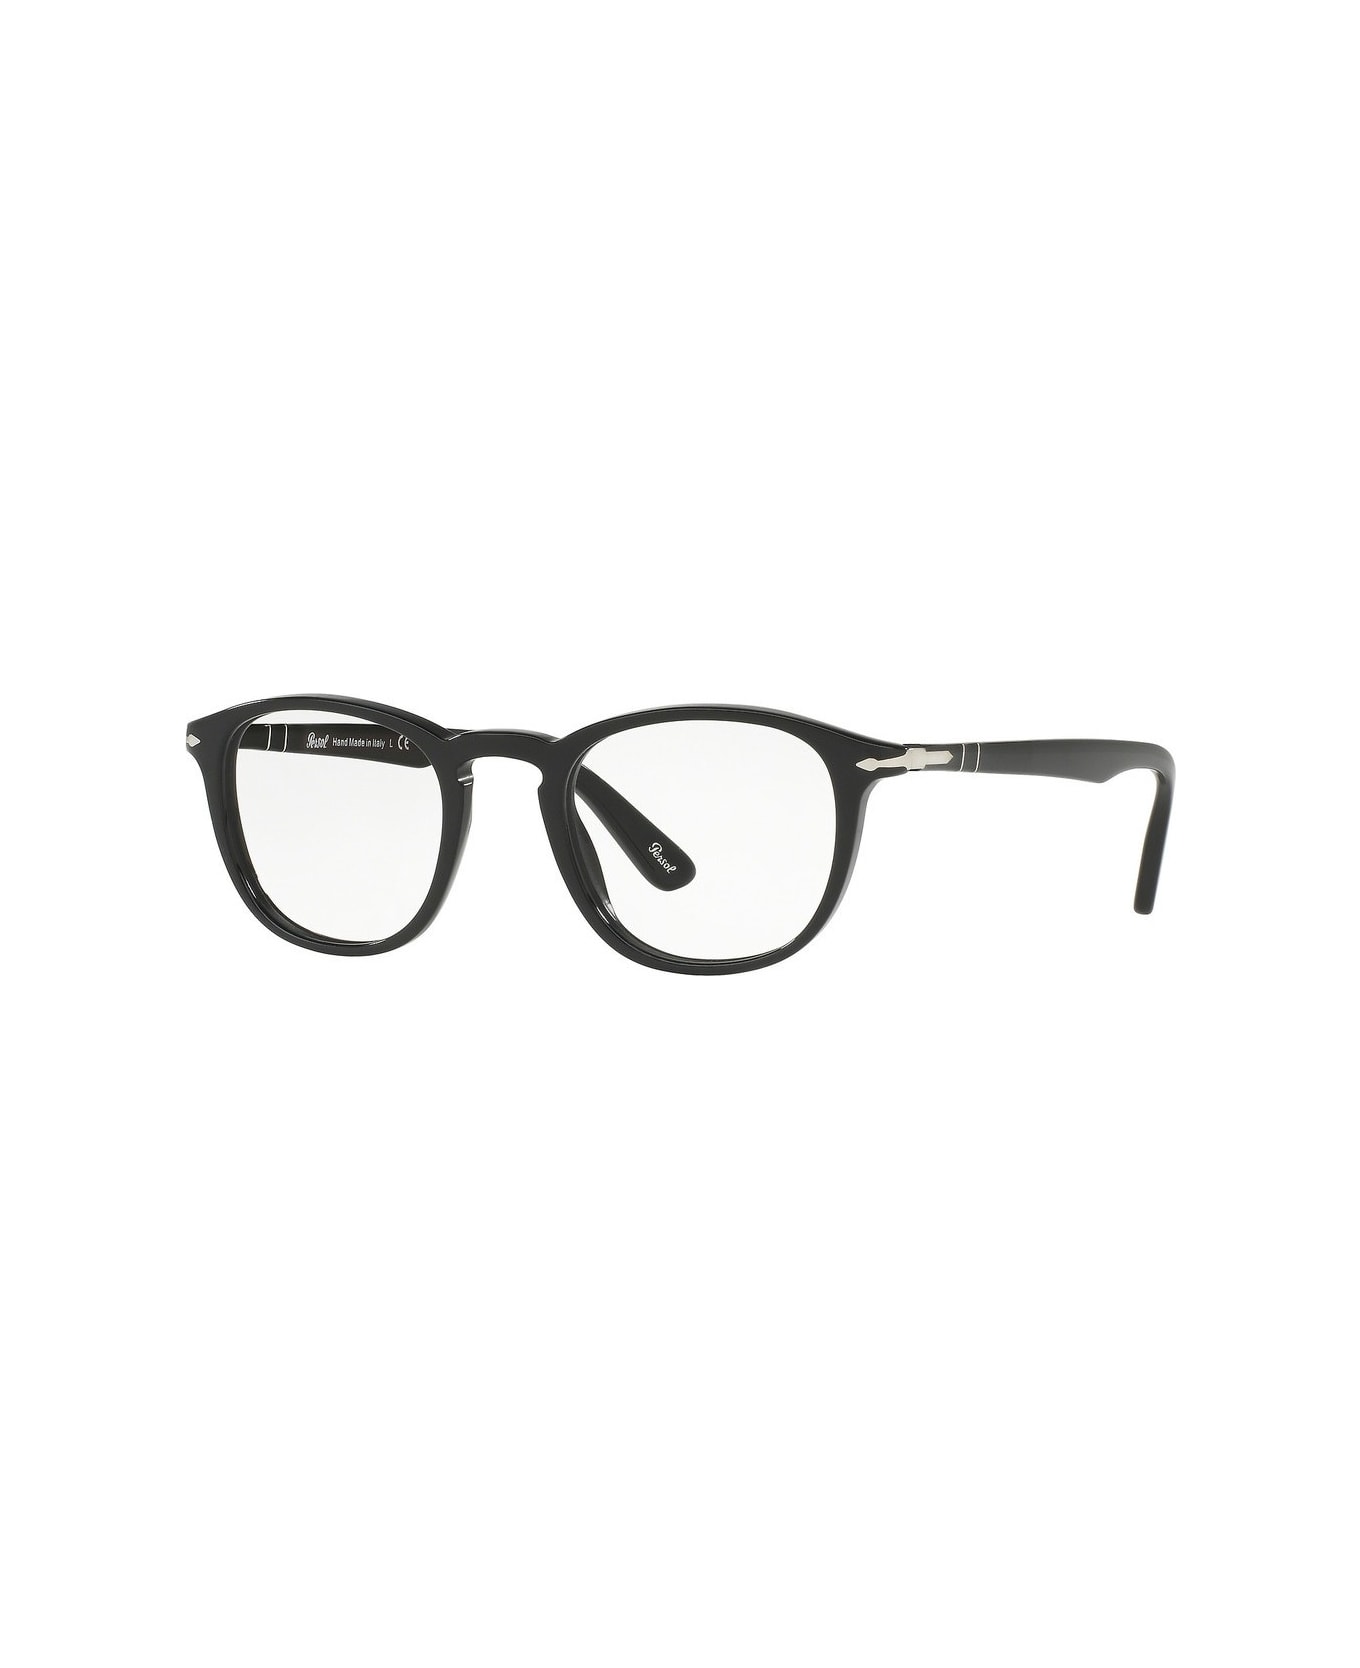 Persol Po3143v Glasses - Nero